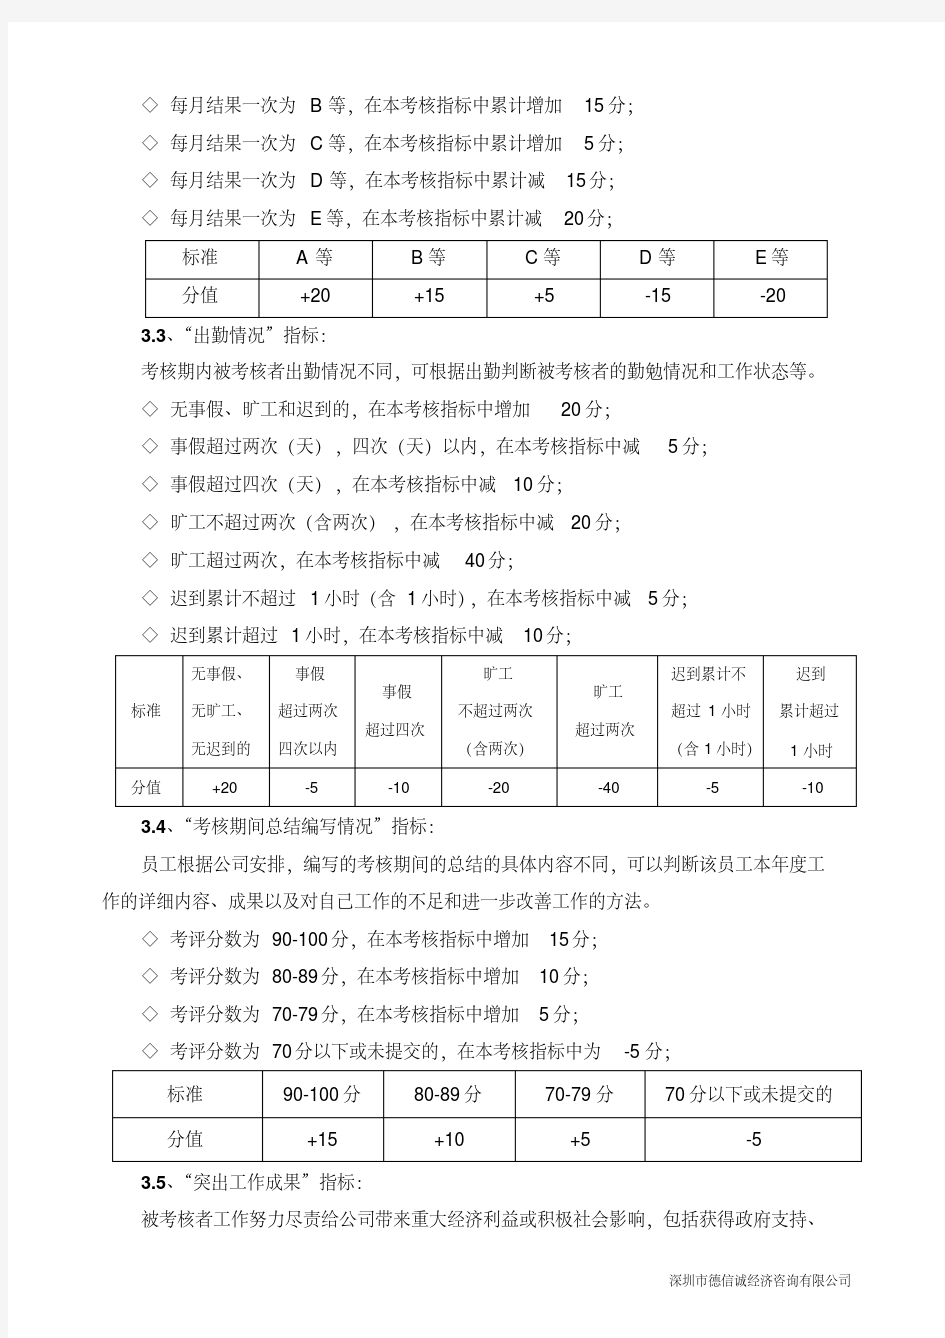 【调薪制度】年度薪酬调整管理办法.pdf